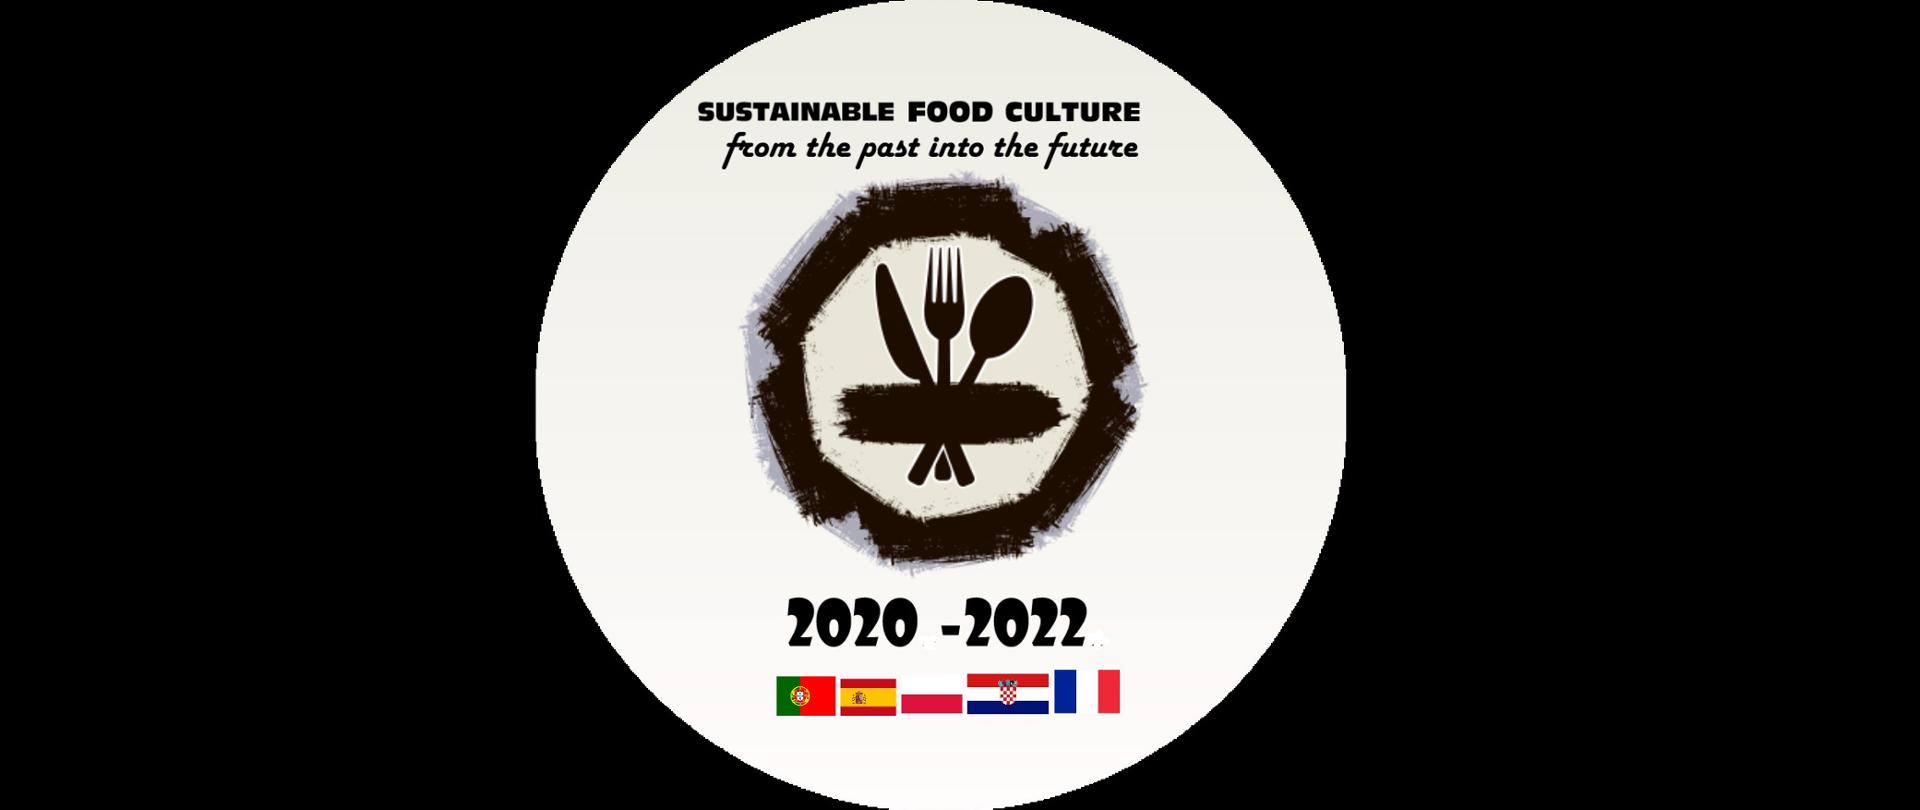 Logotyp projektu Erasmus+ Sustainable Food Culture – from the Past into the Future. Zwycięski Logotyp zaprojektowany przez grupę uczniów z Chorwacji. Logotyp składa się z czarnych napisów: tytuł projektu, daty projektu 2020-2022, w środku znajduję się czarne skrzyżowane sztućce: nóż, widelec łyżka. Na dole flagi państw partnerskich: od lewej portugalska, hiszpańska, polska, chorwacka i francuska